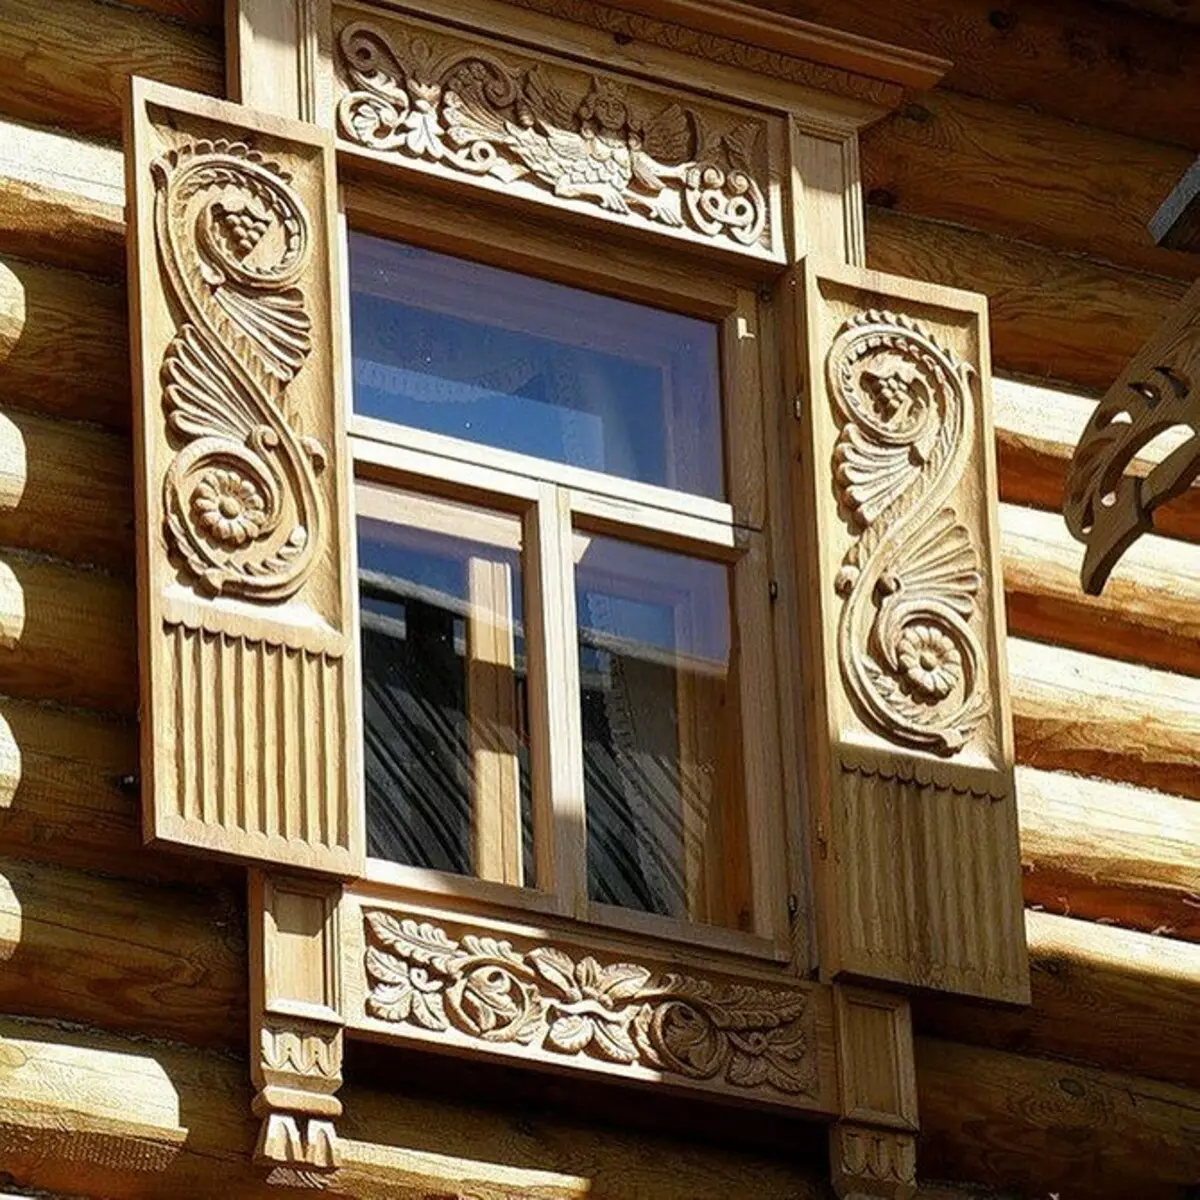 Platbands tallados en las ventanas en una casa de madera: Maternitym e Install hágalo usted mismo 9481_63